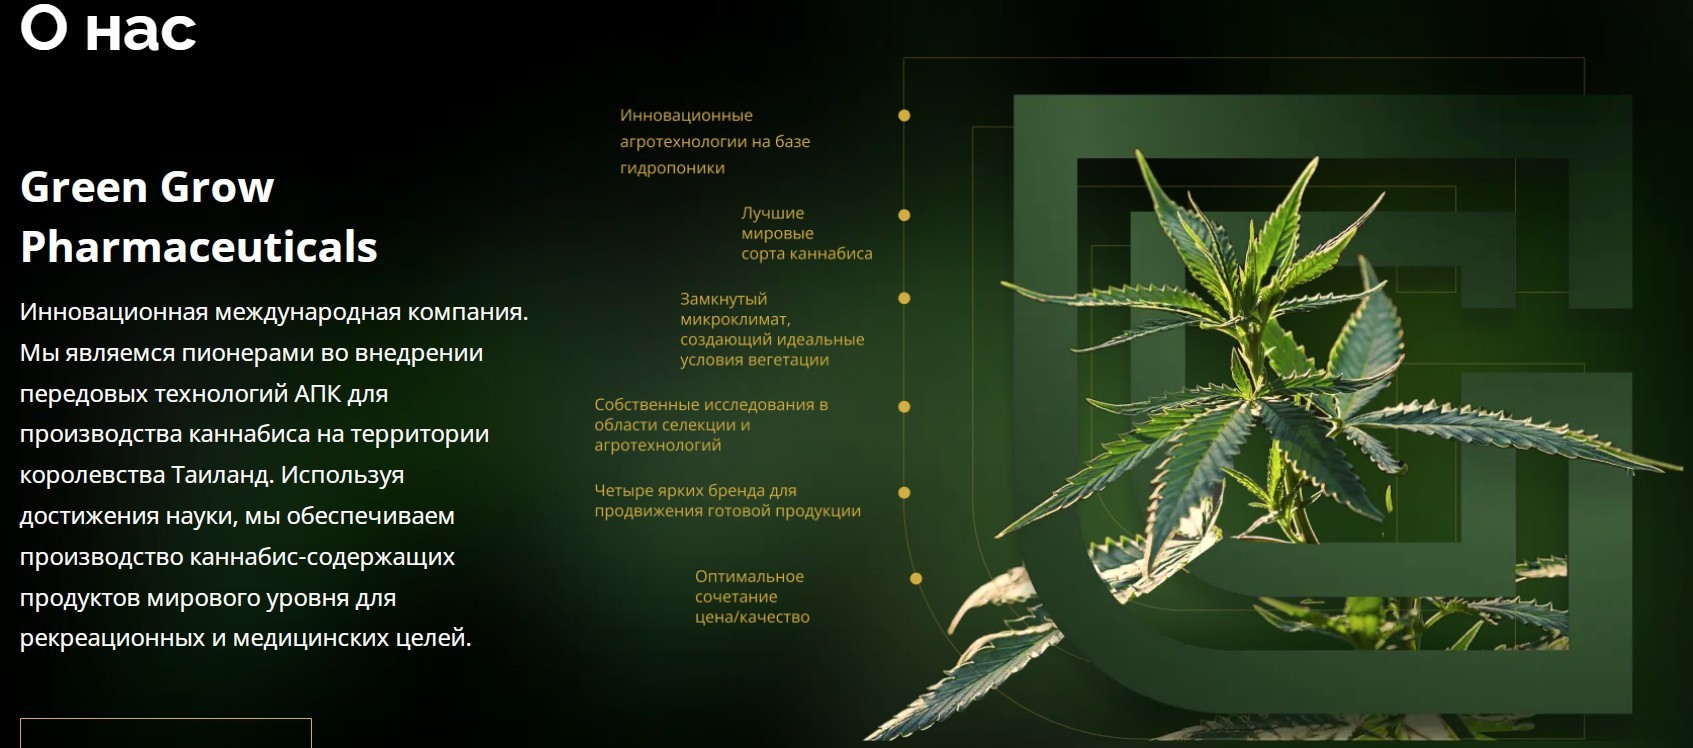 Обзор компании Green Grow Pharmaceuticals